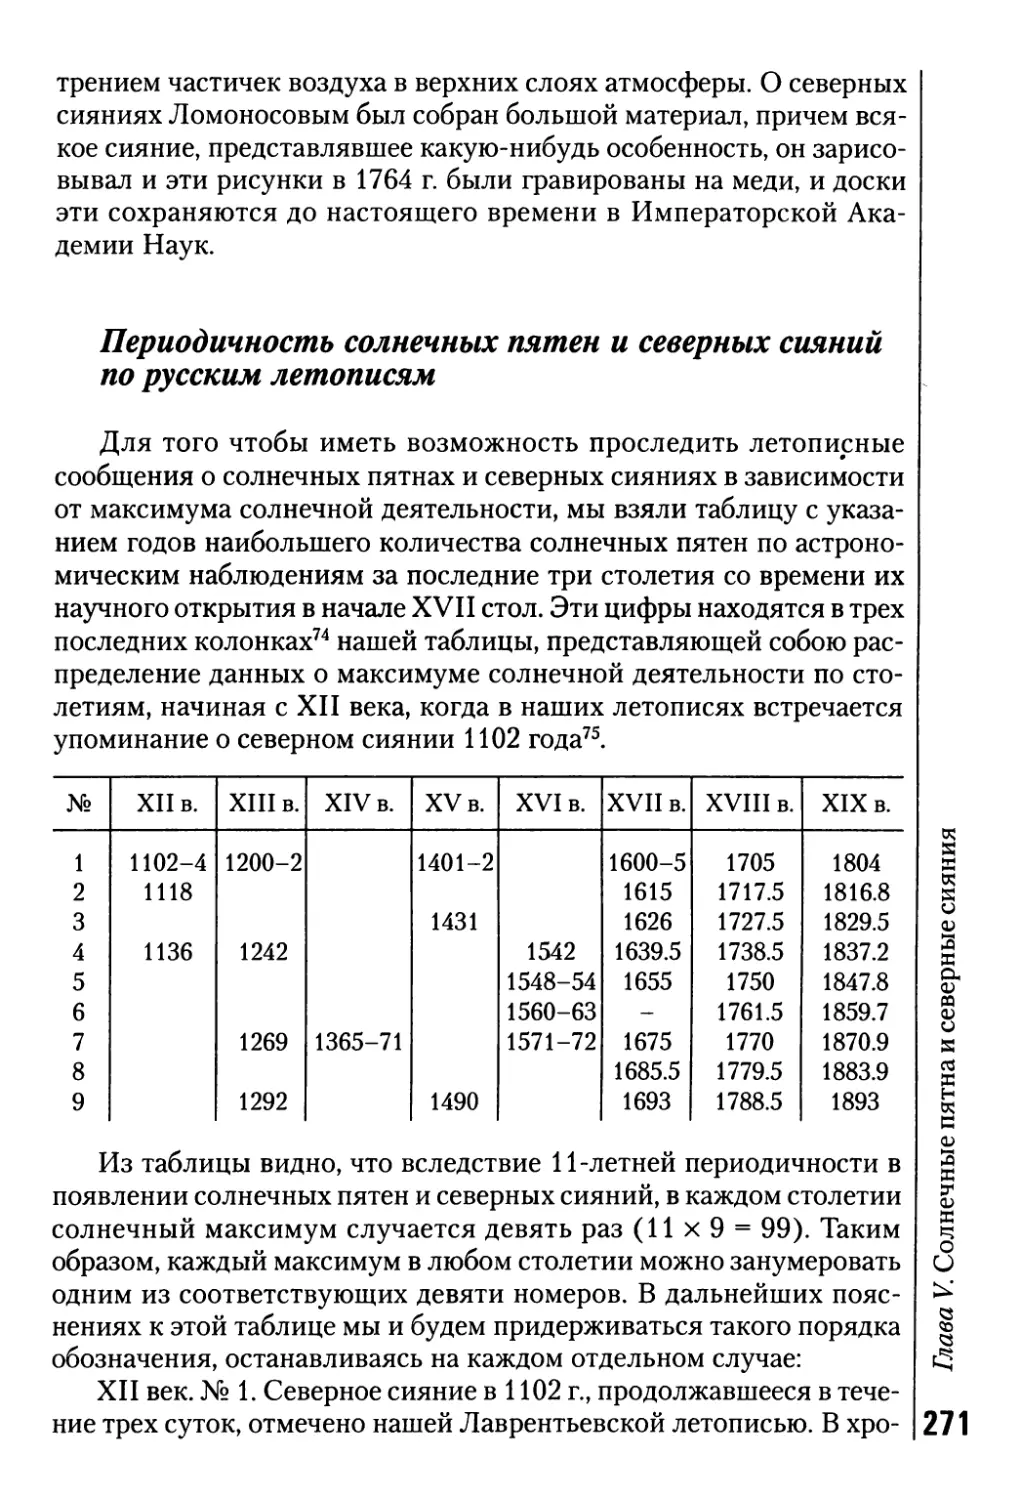 Периодичность солнечных пятен и северных сияний по русским летописям